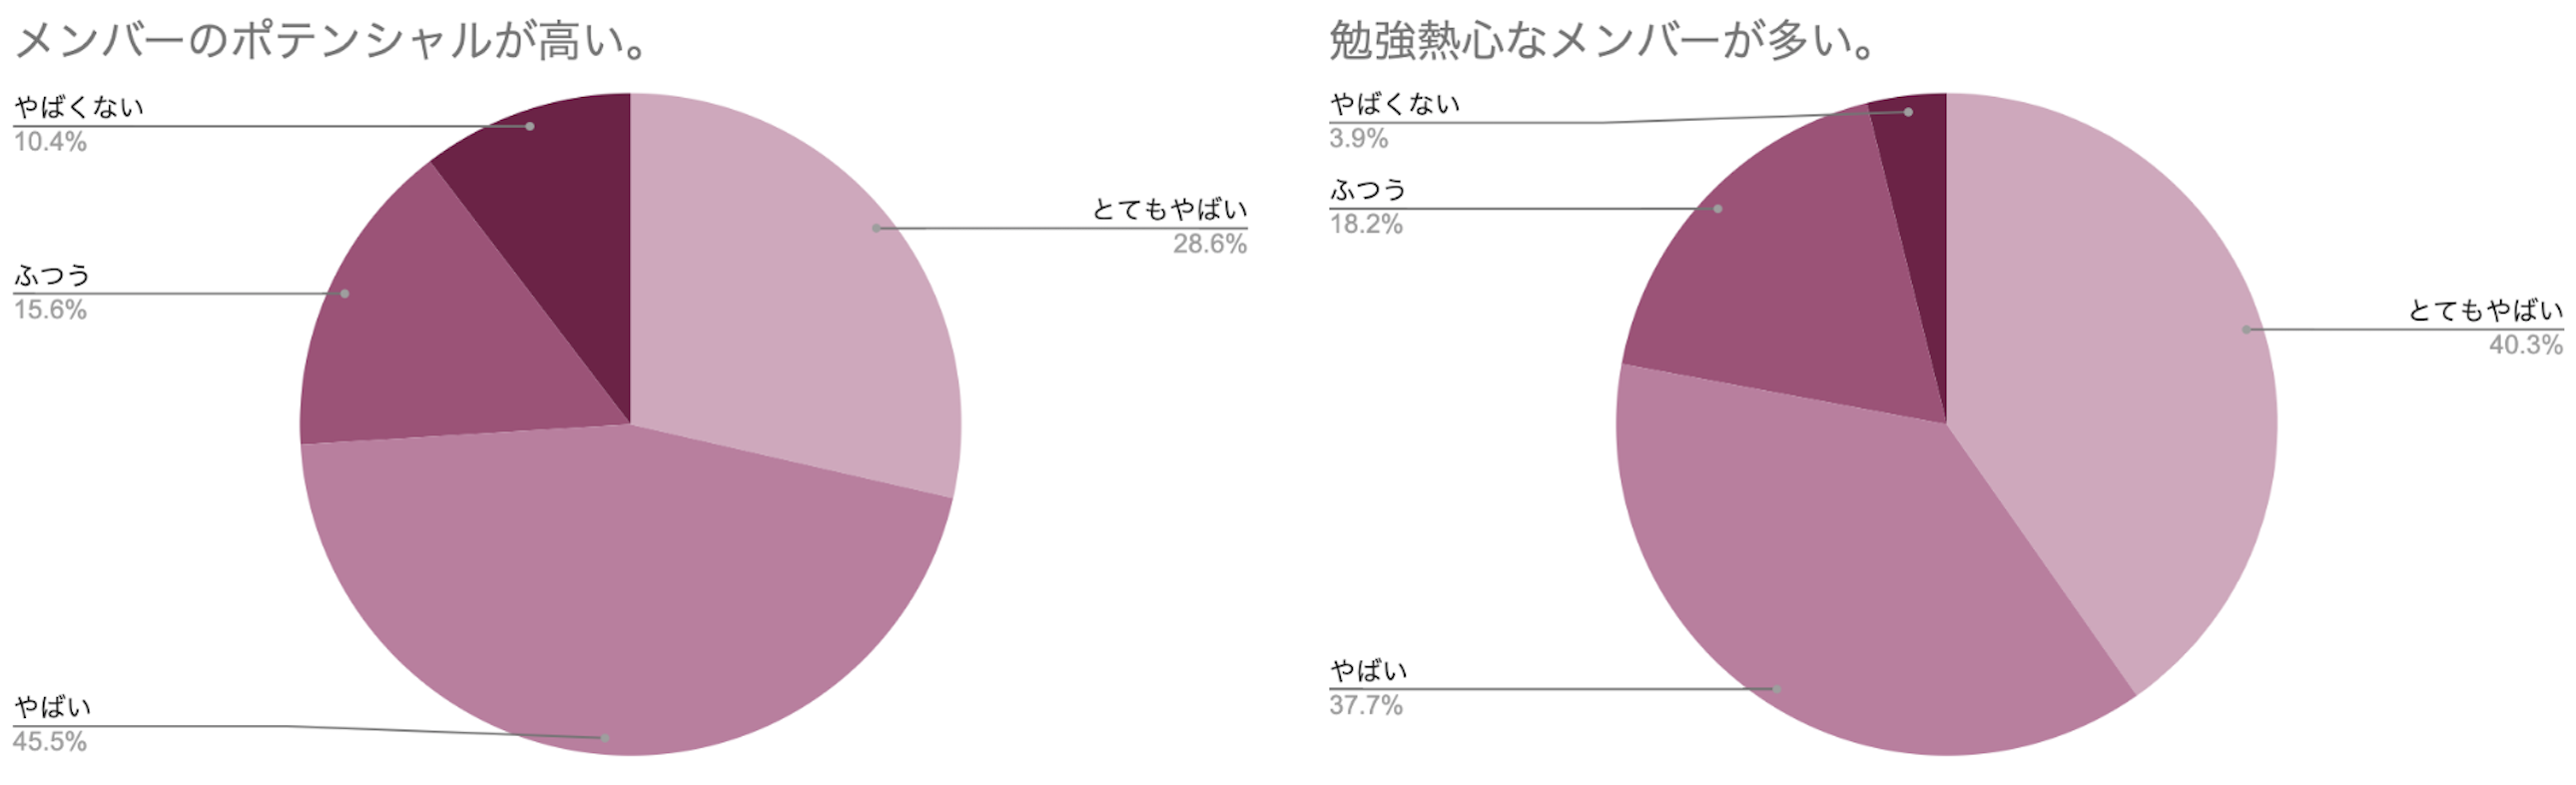 円グラフ メンバーのポテンシャルが高い 勉強熱心なメンバーが多い